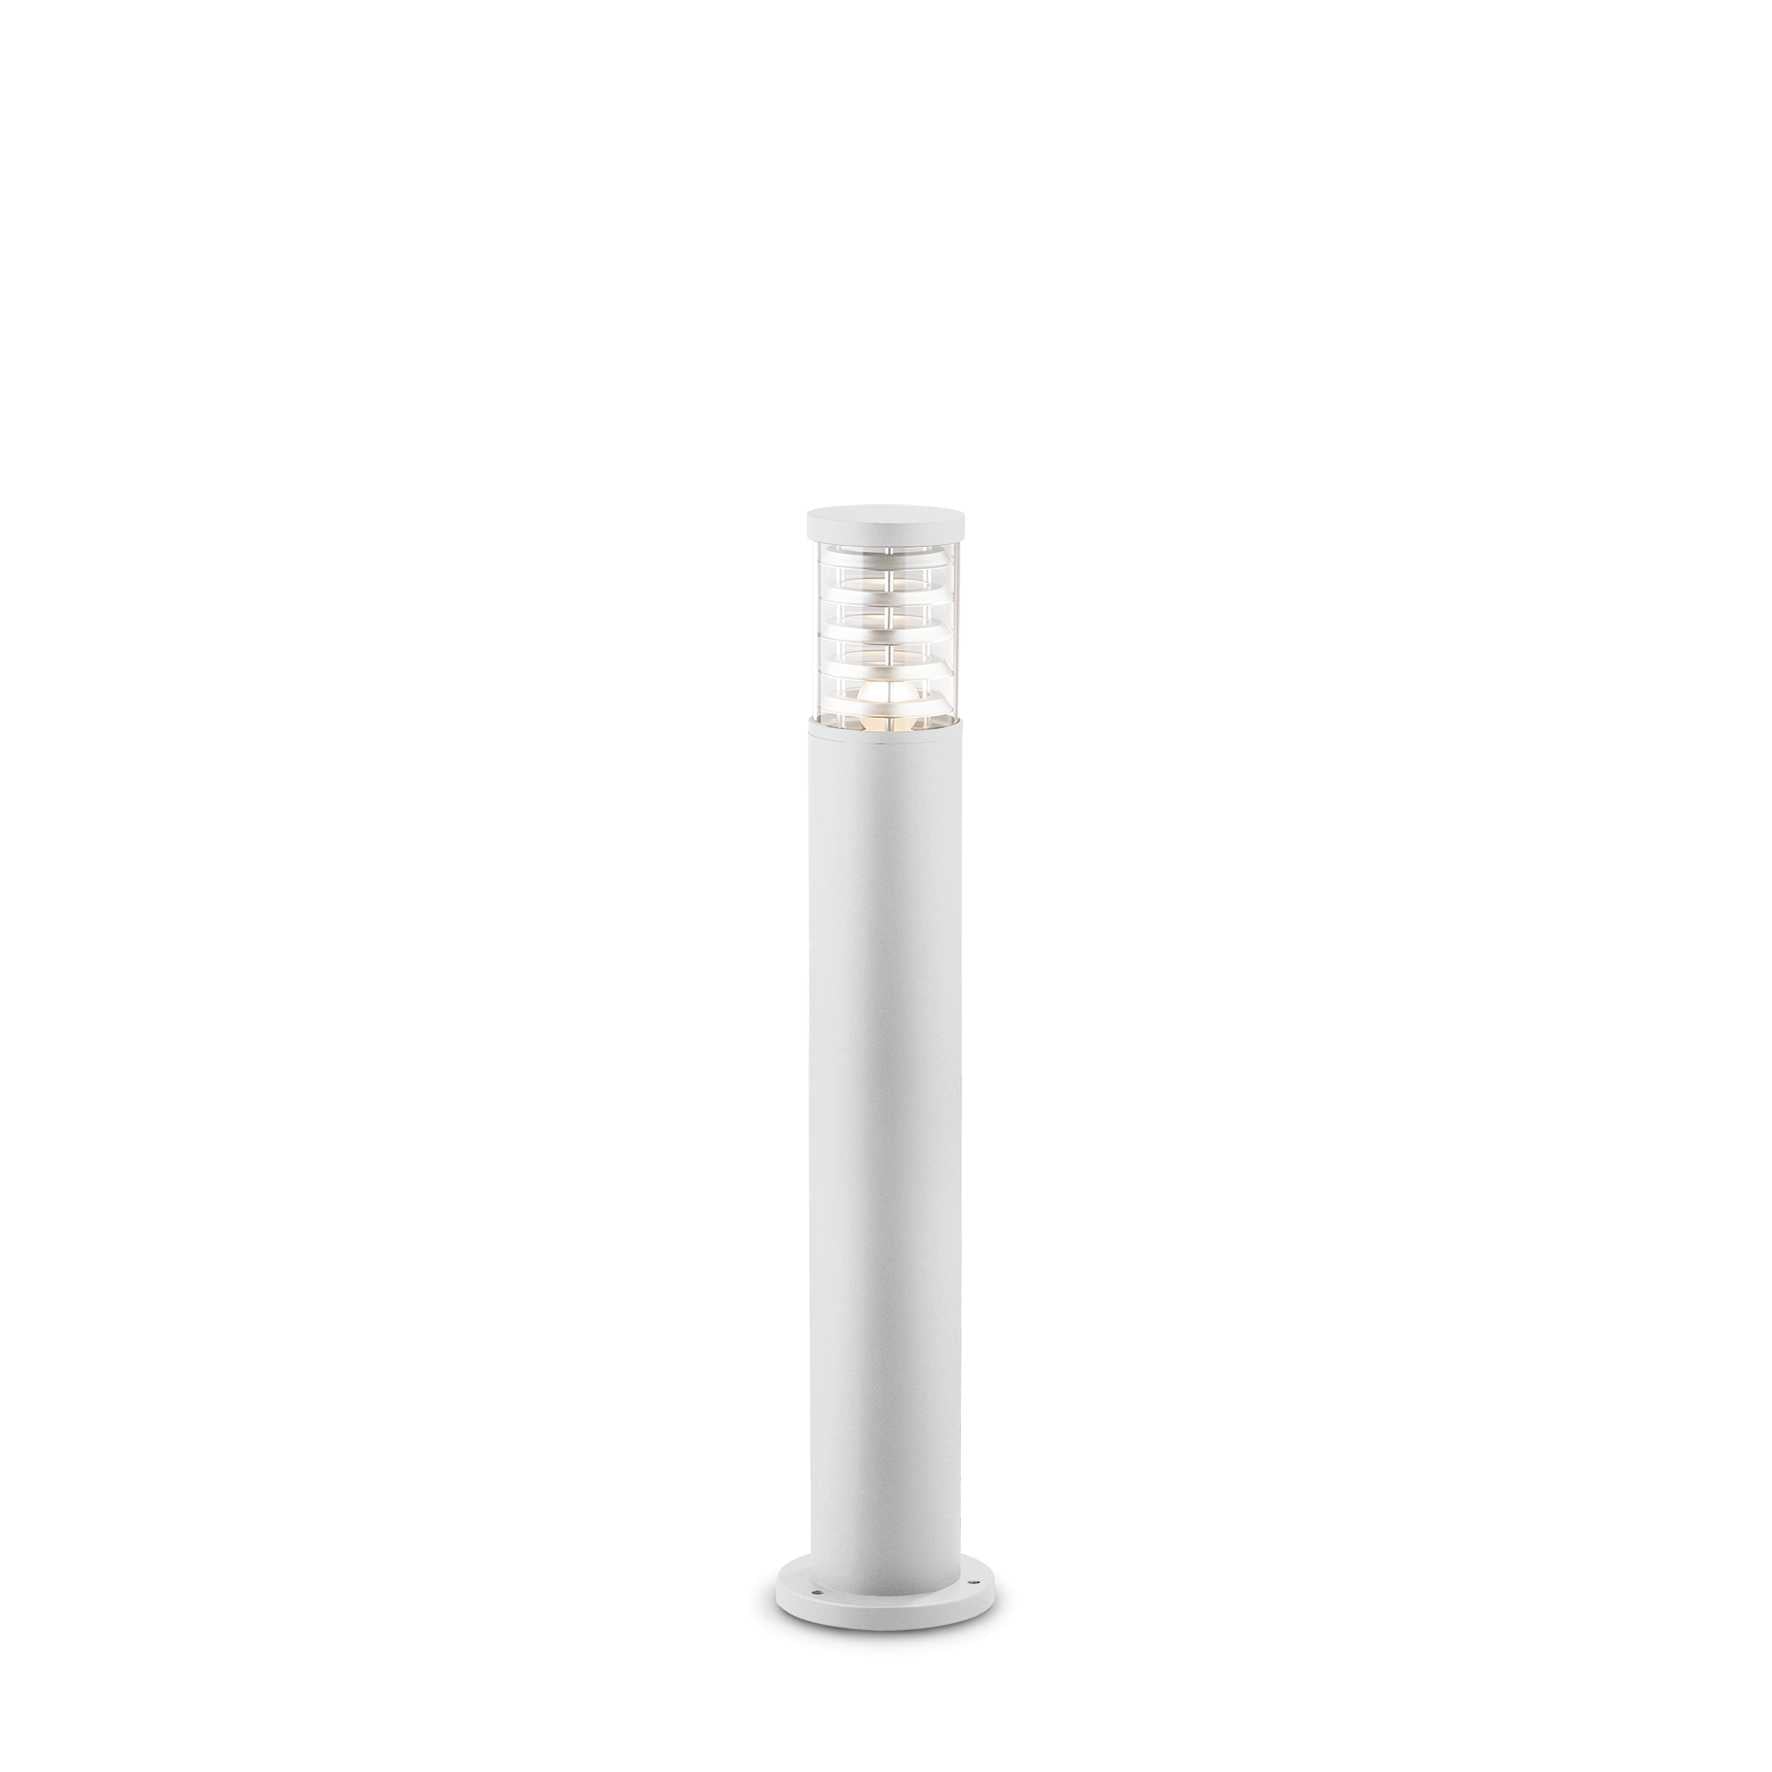 Tronco 80cm Single Garden Post Light in White